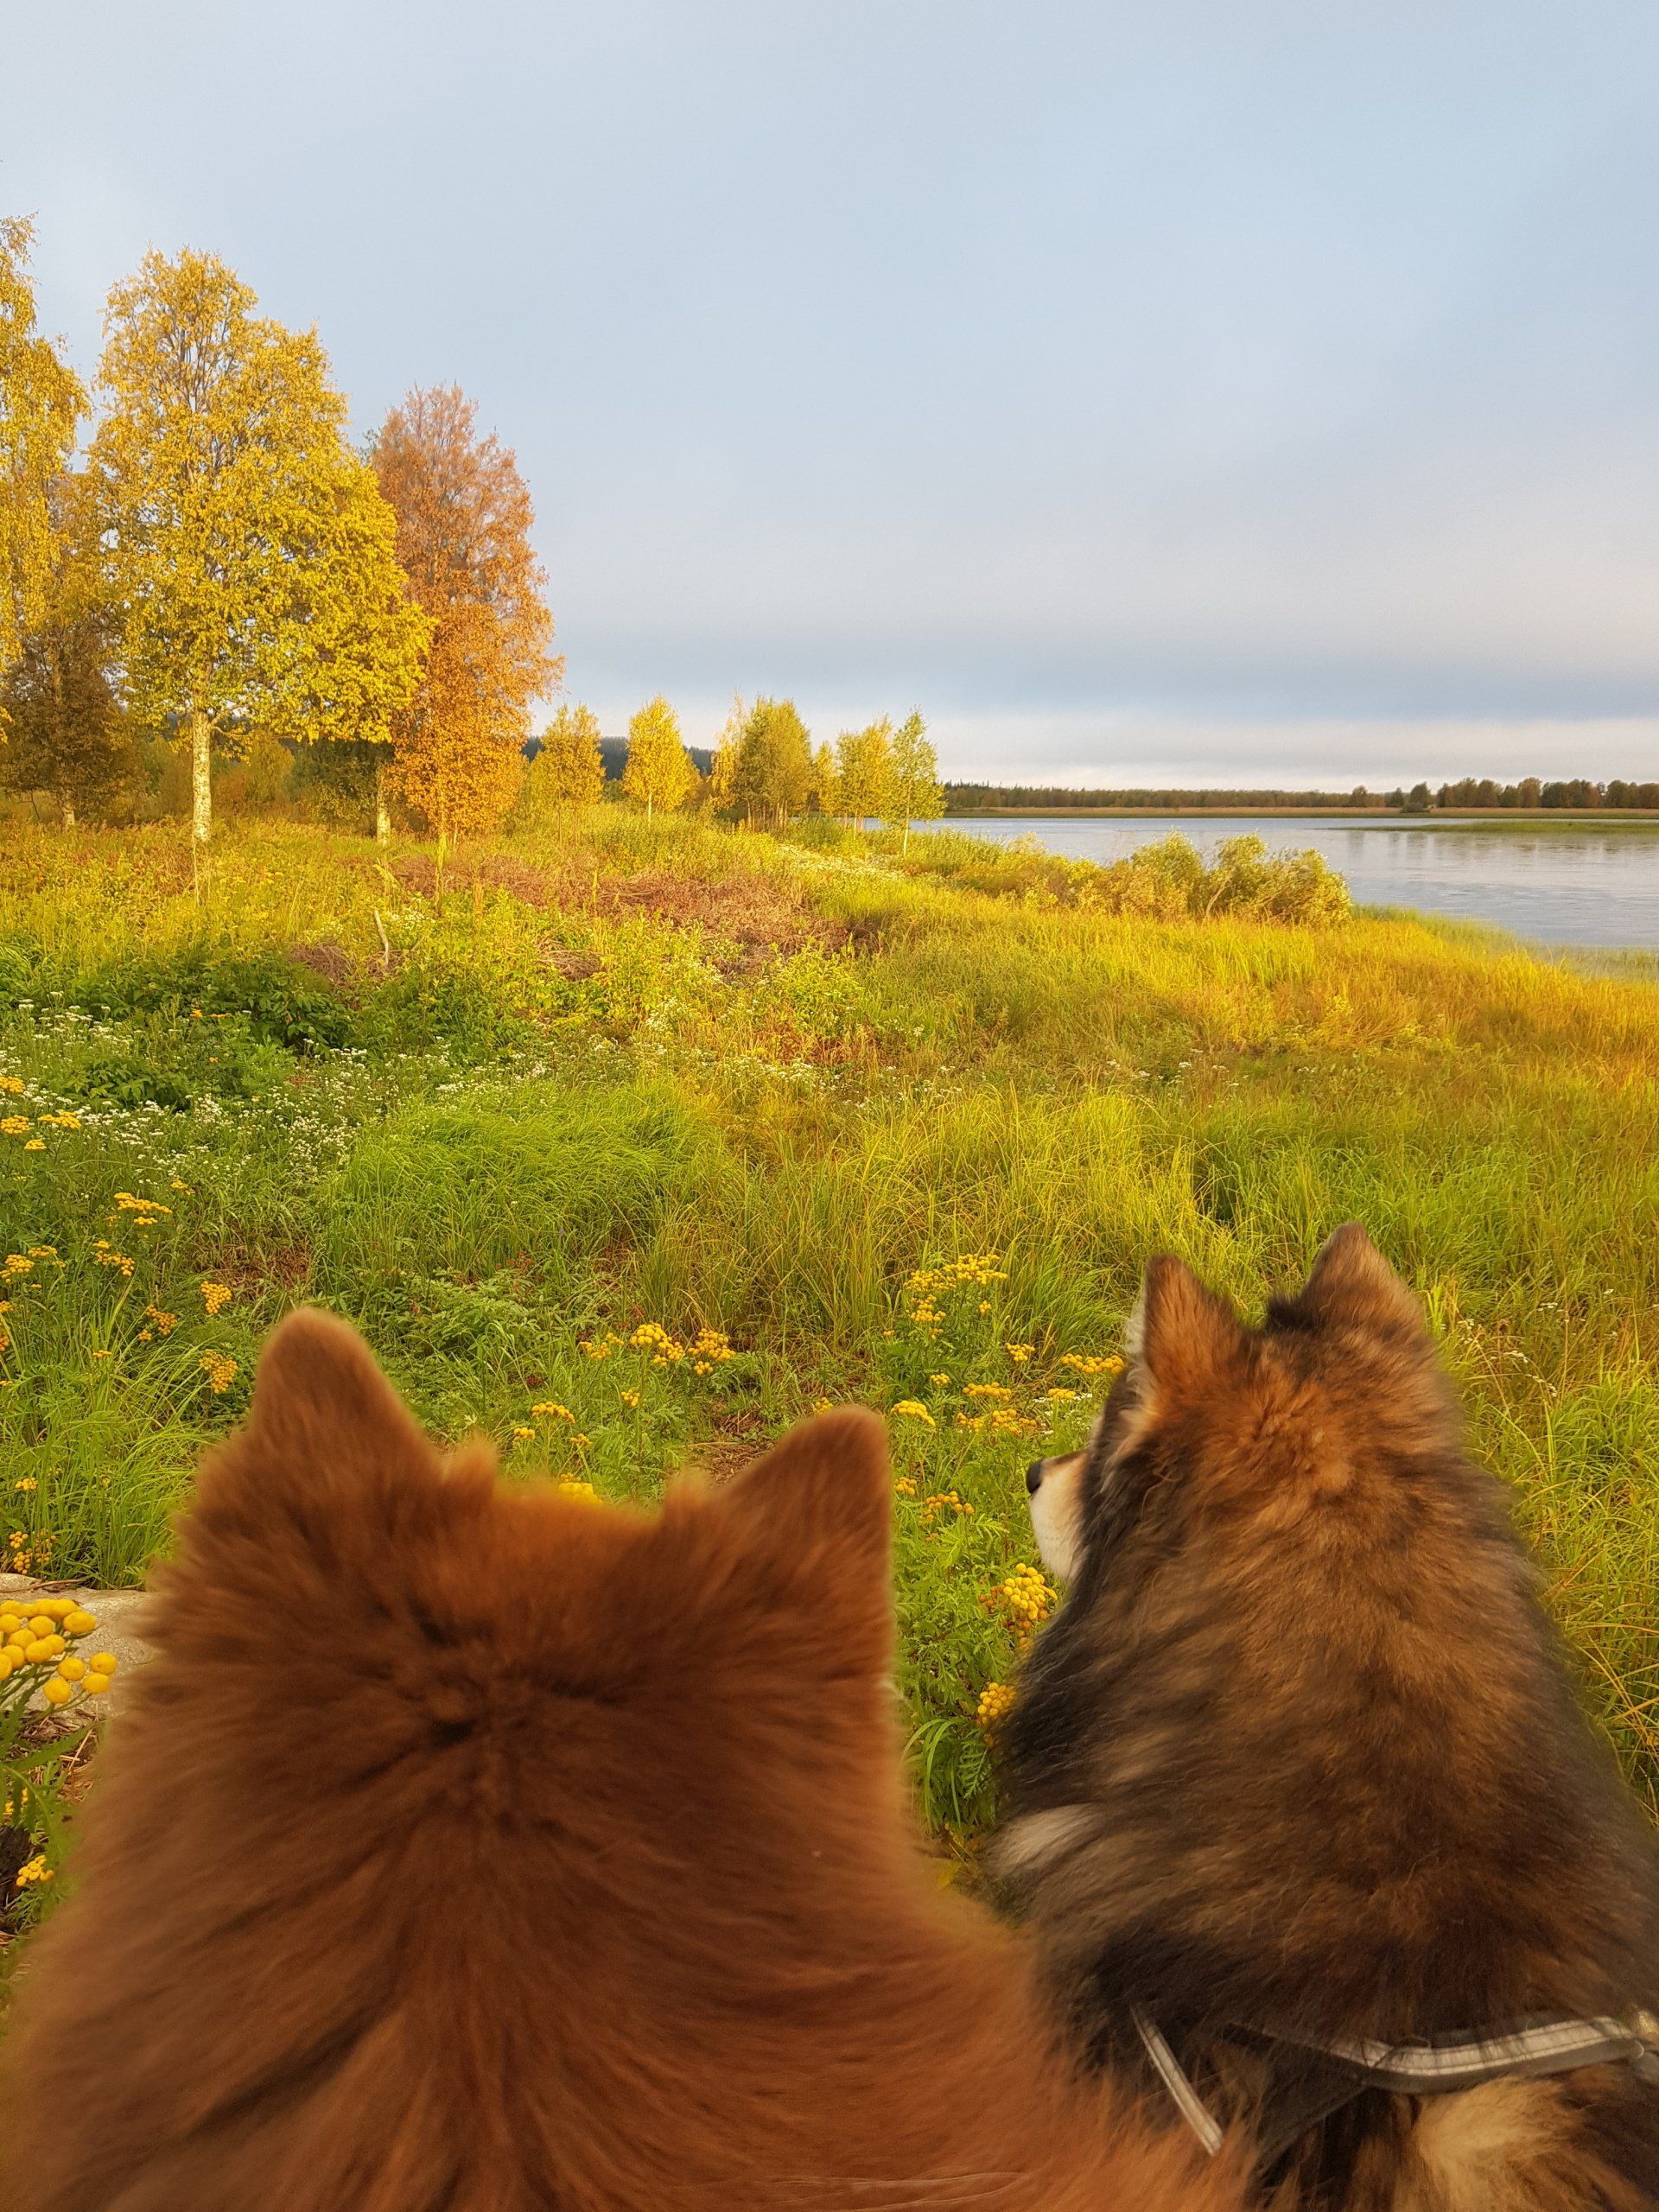 Koirat istuvat Muonionjoen rannassa ruska-aikaan.